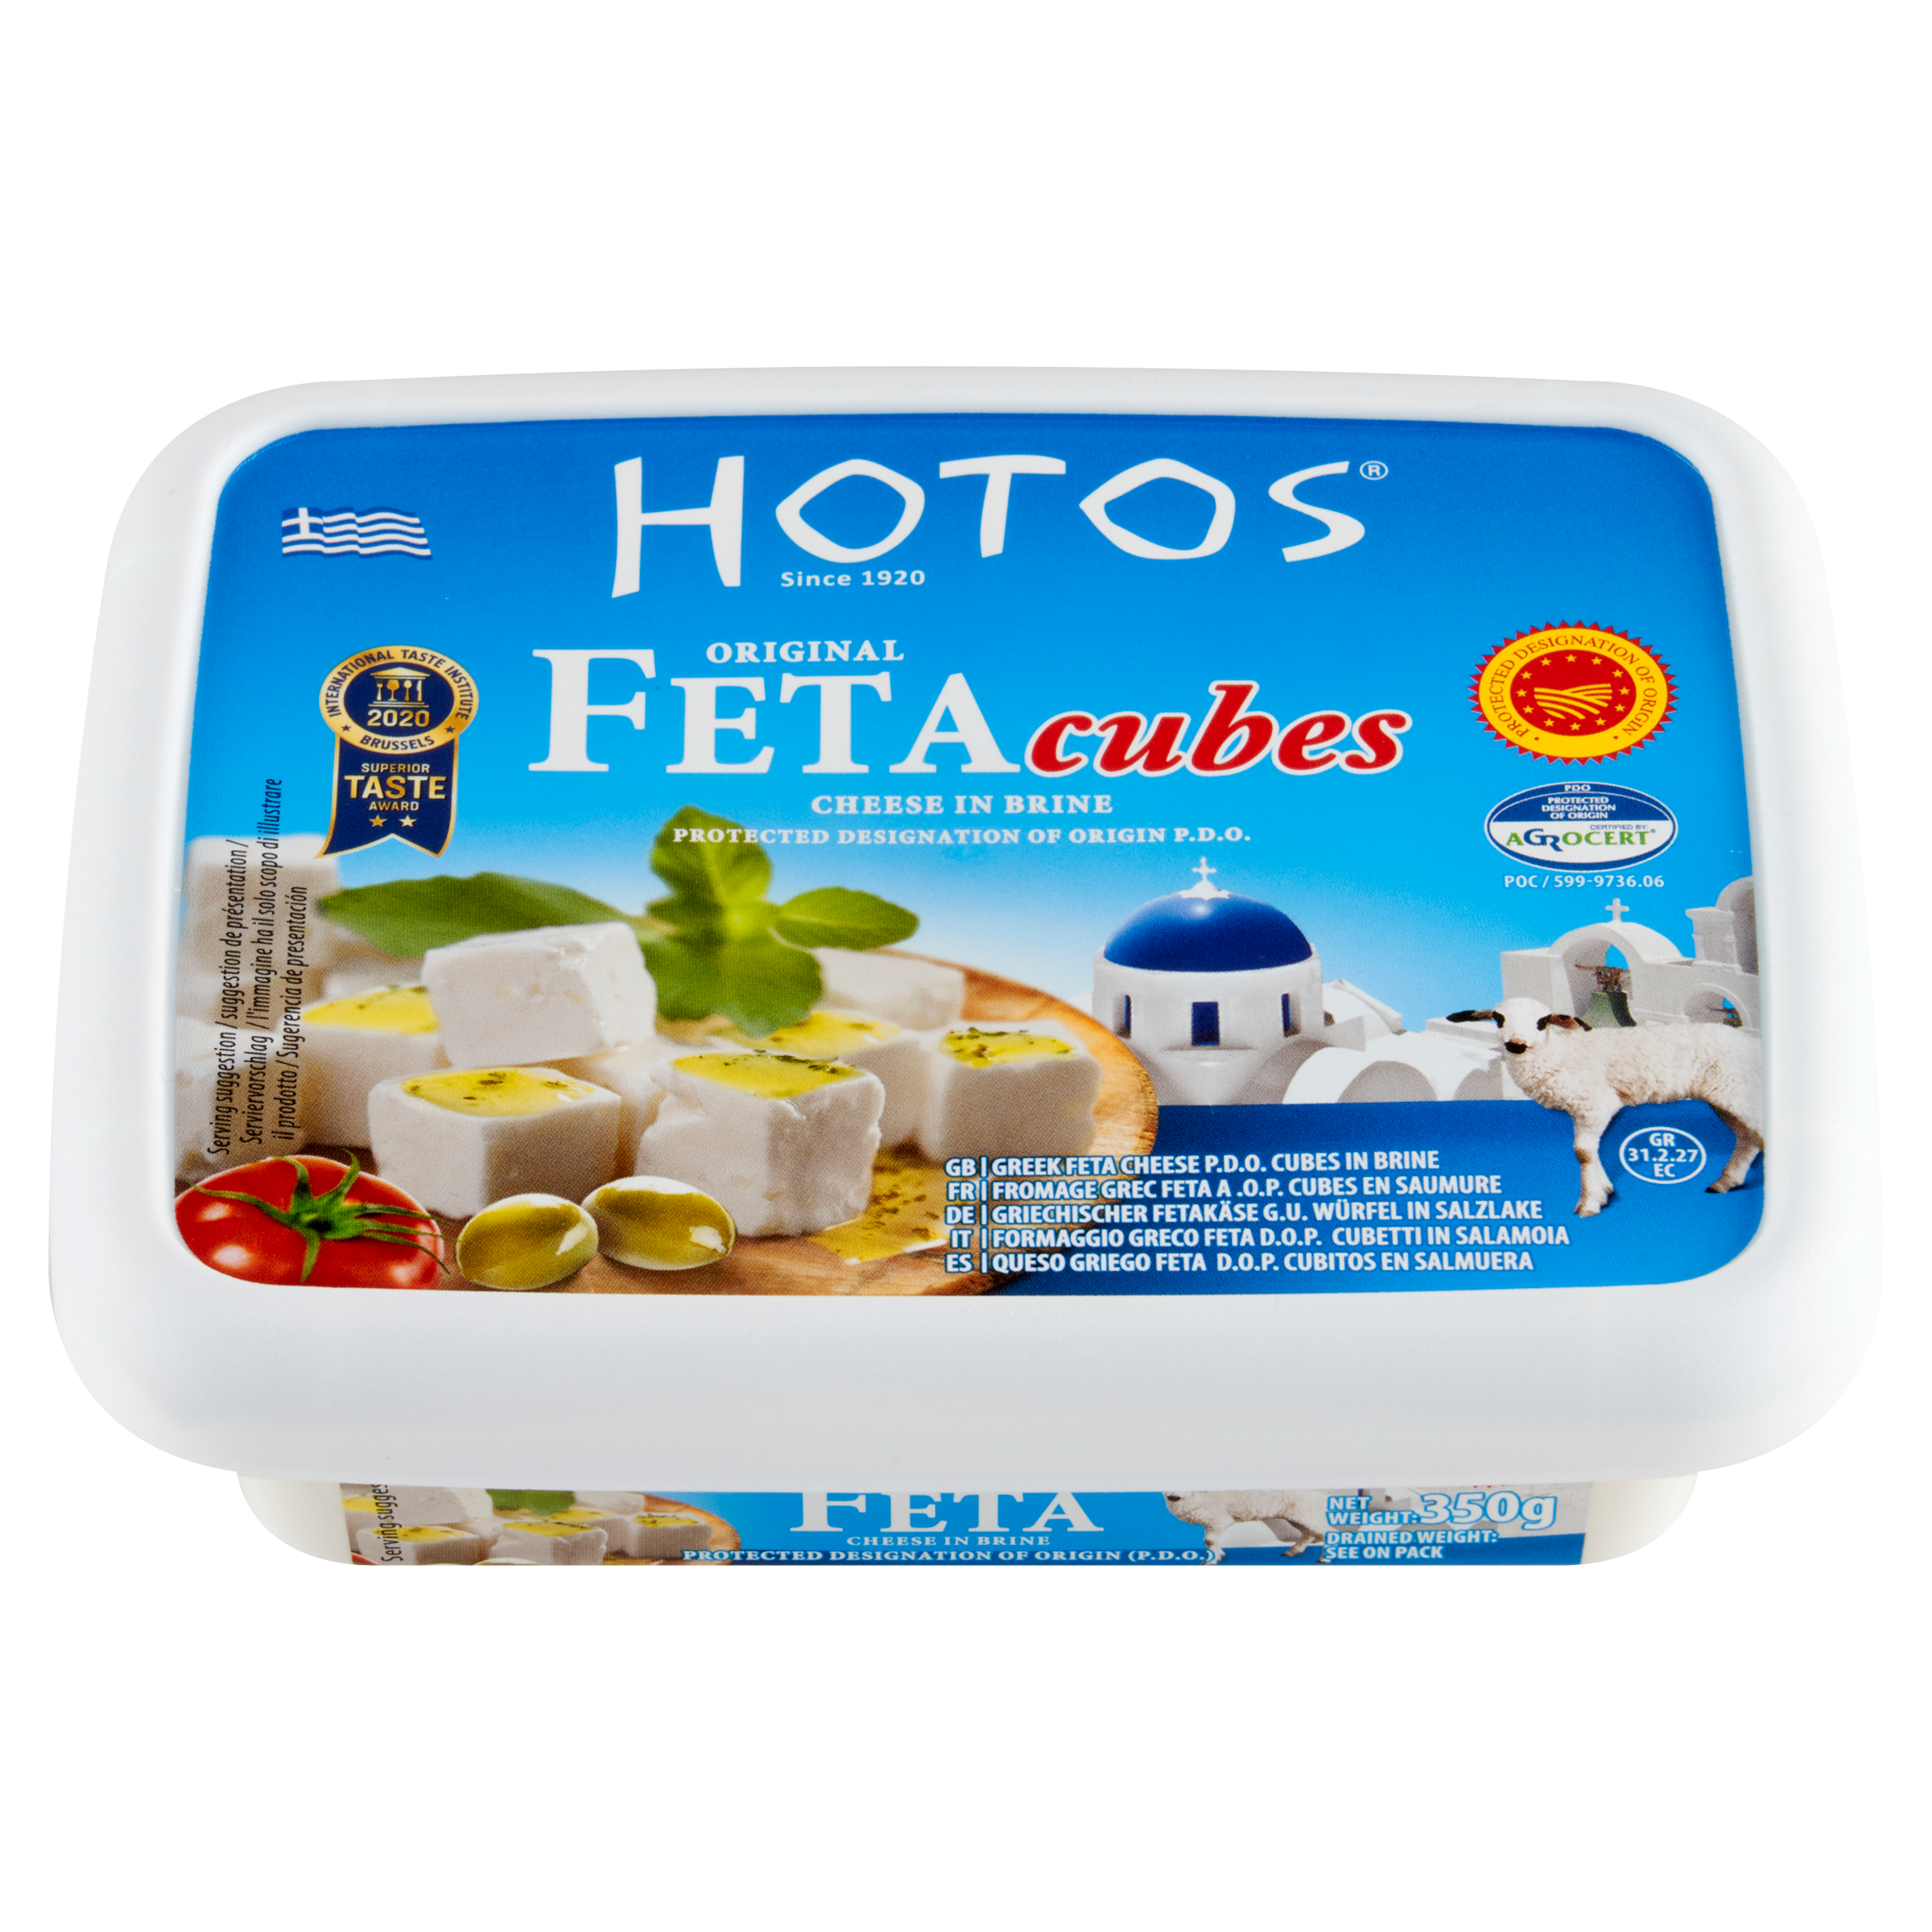 PDO HOTOS GREEK FETA CHEESE (brine cubes)